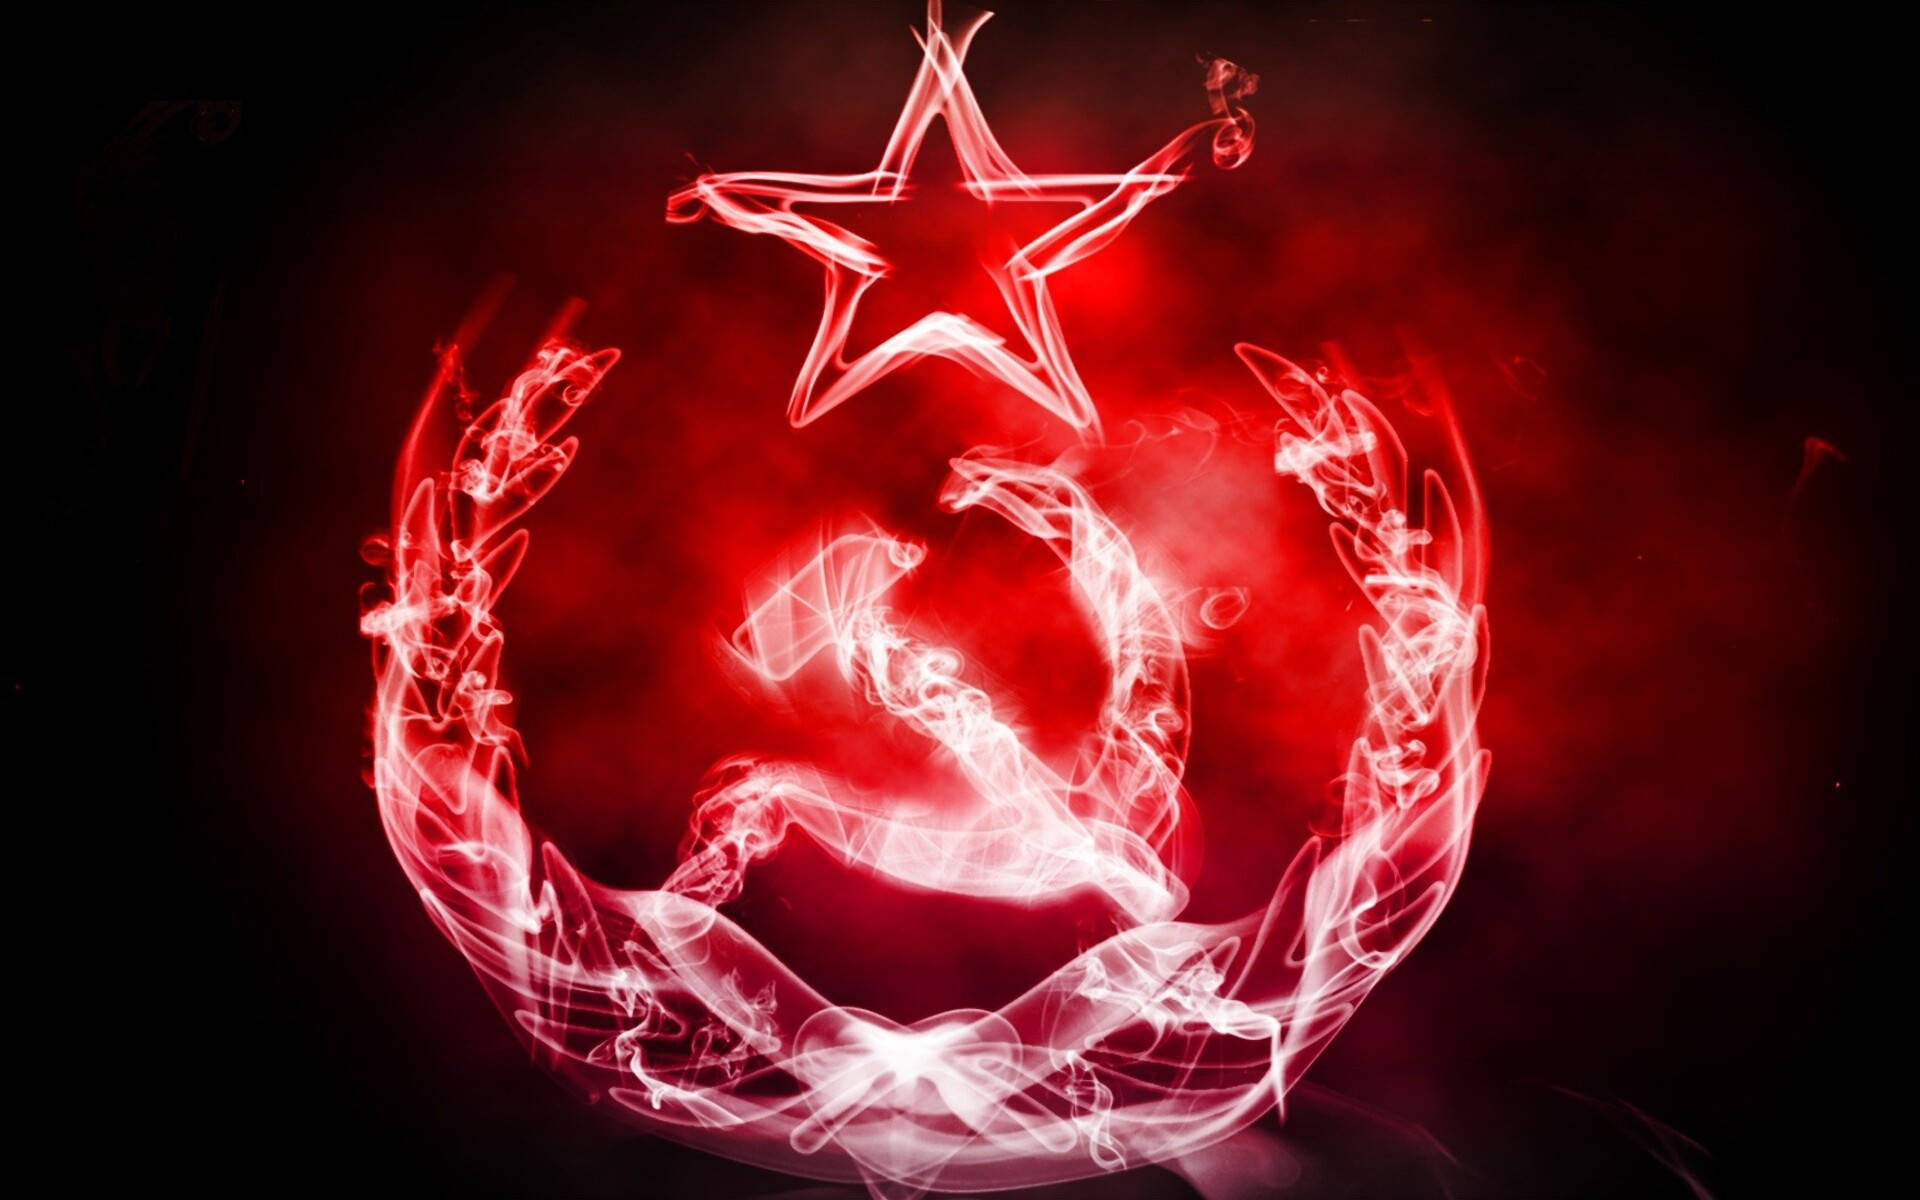 Bandeiravermelha Da União Soviética Em Chamas. Papel de Parede